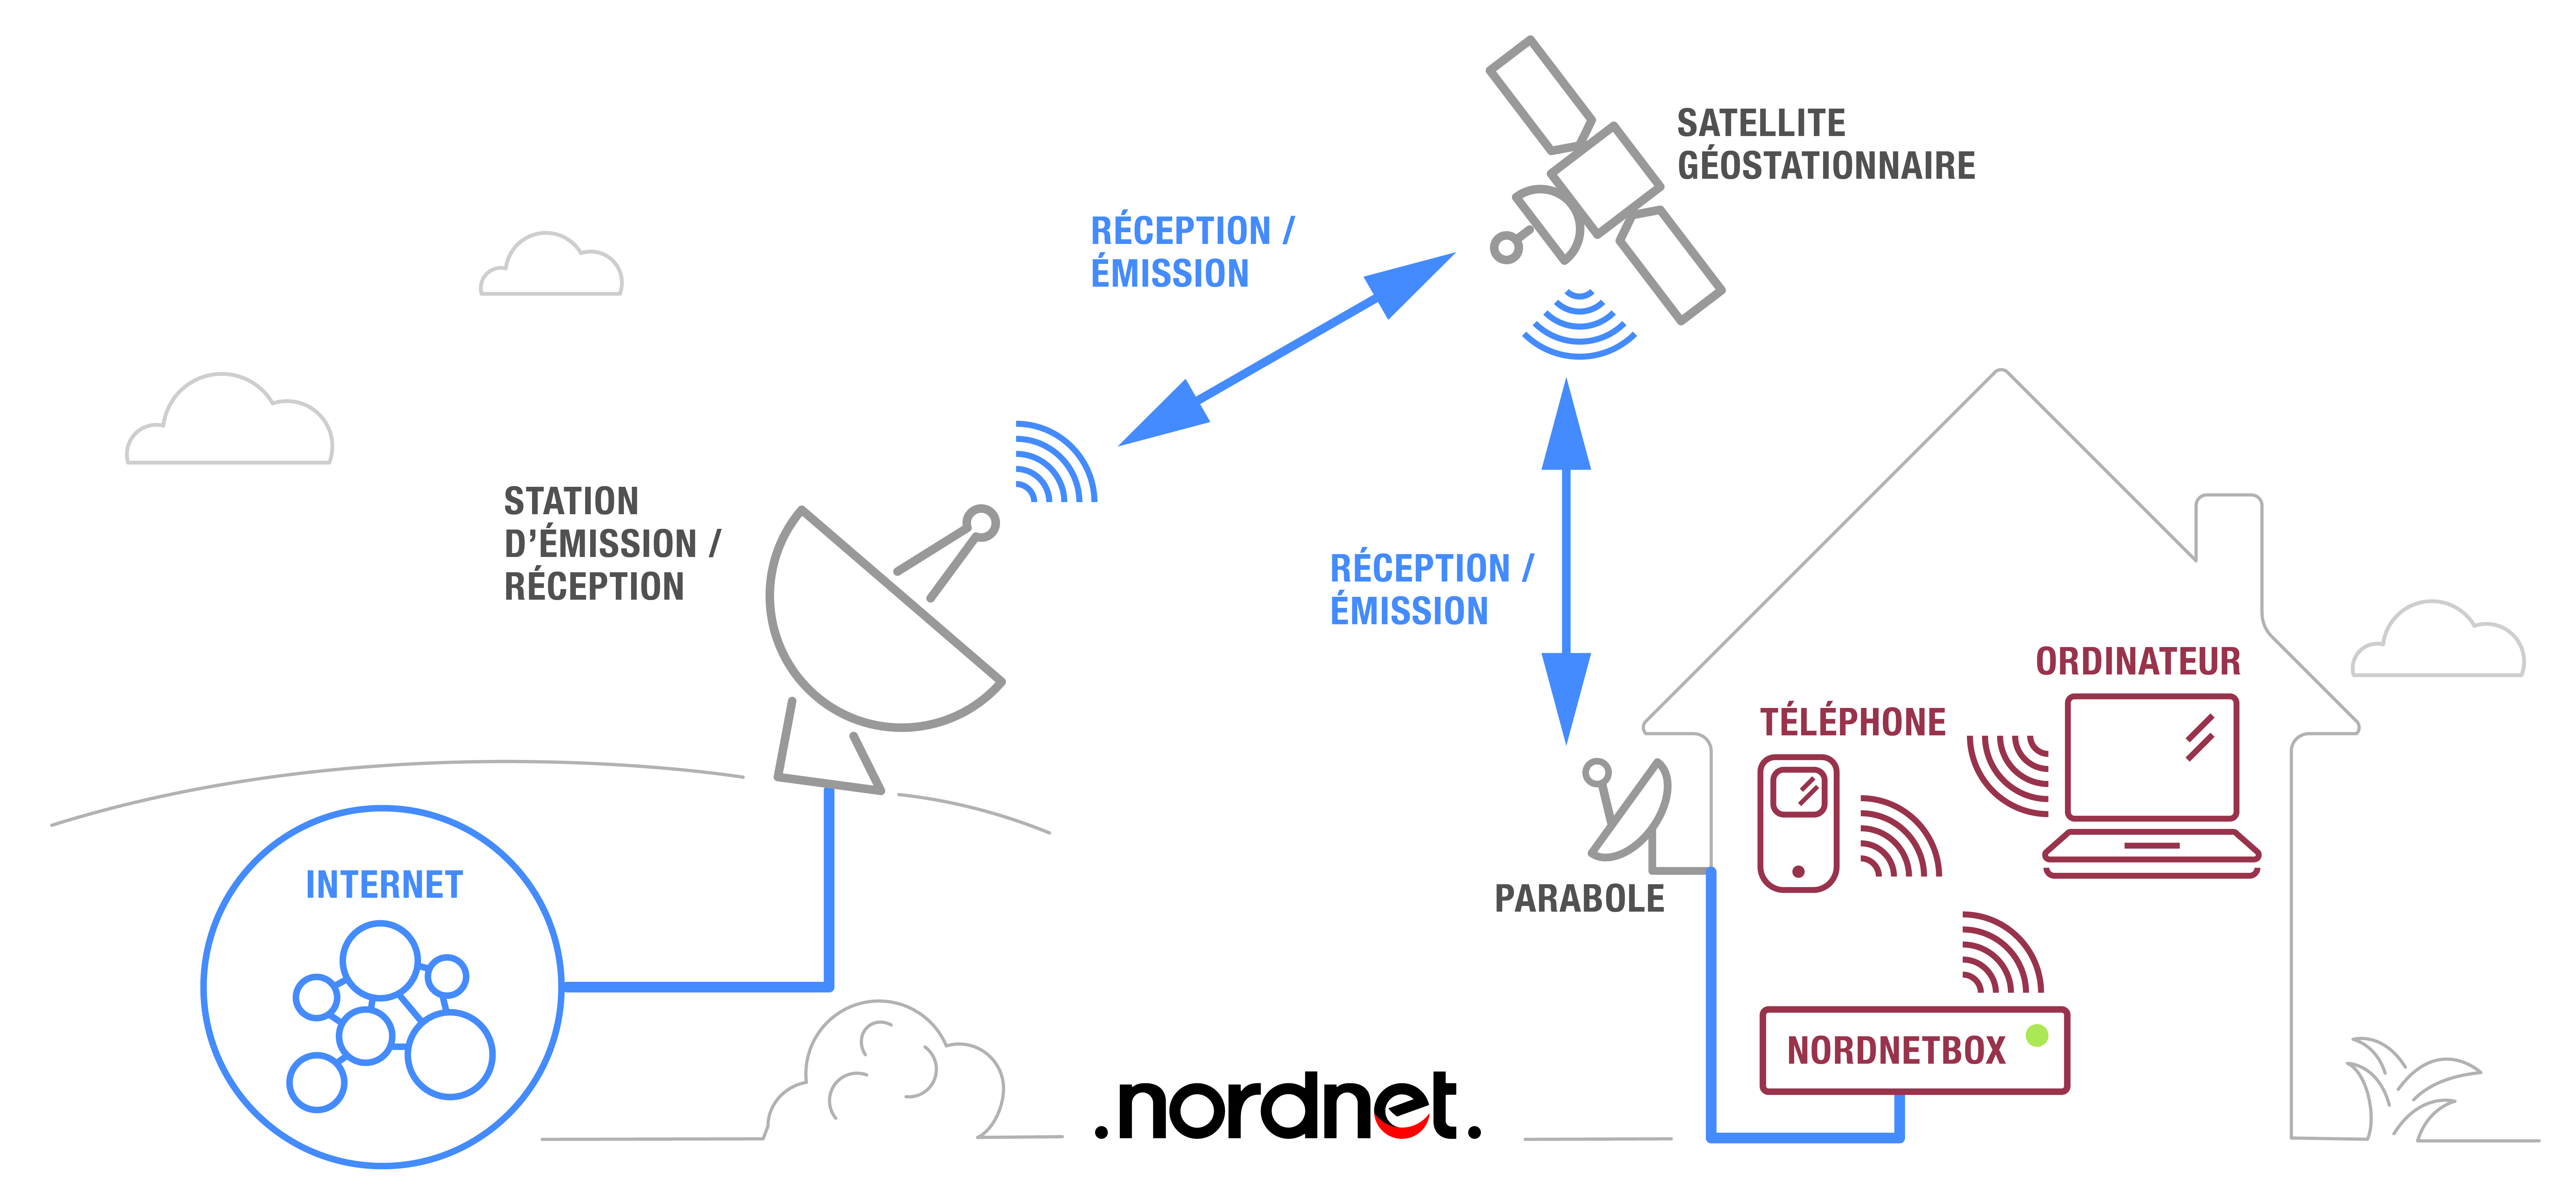 La connexion internet par satellite bidirectionnelle